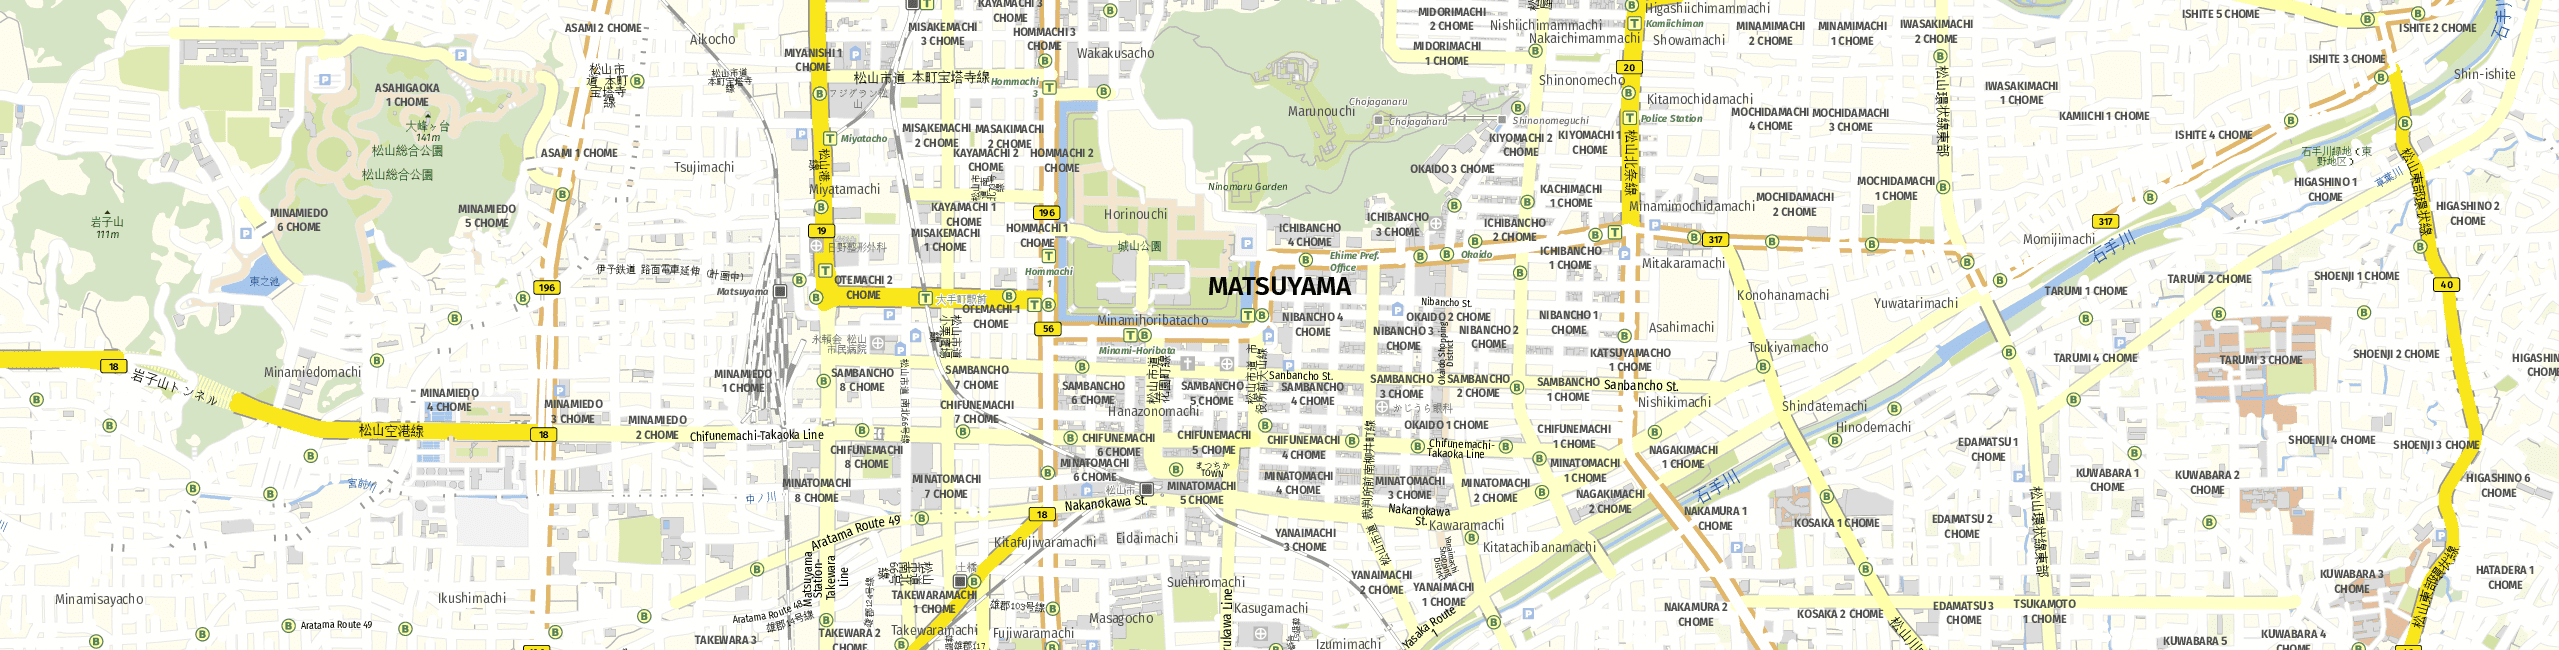 Stadtplan Matsuyama zum Downloaden.